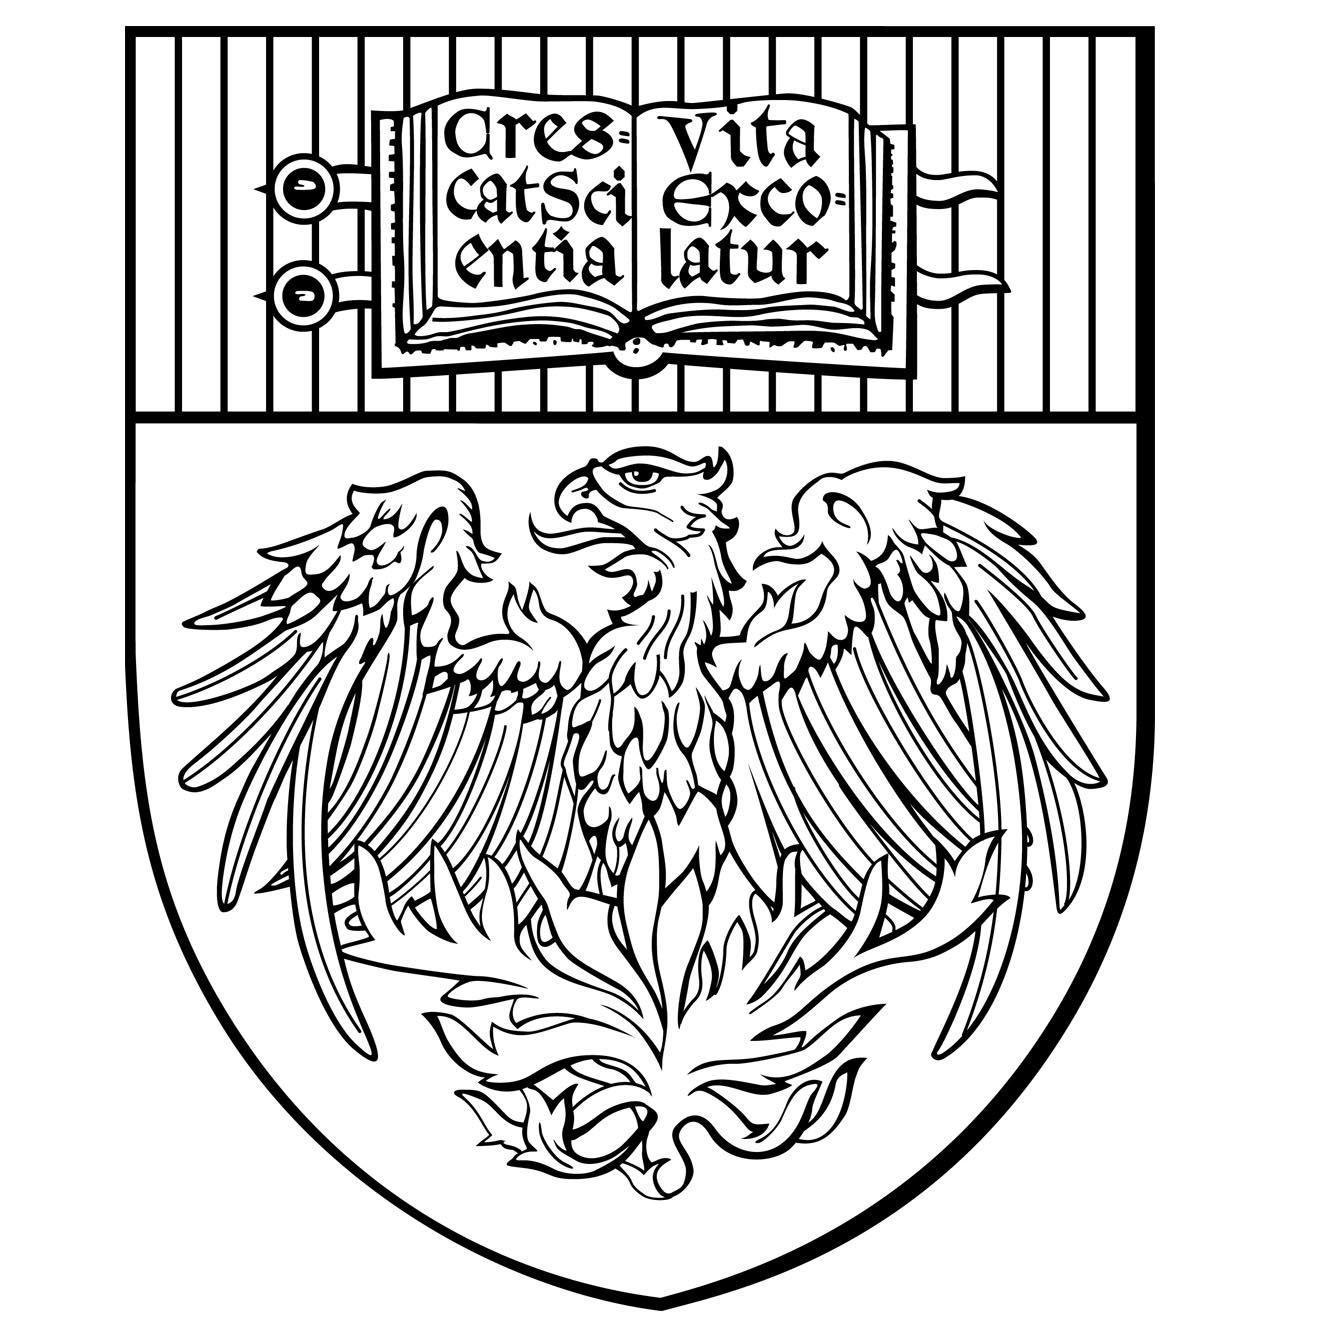 University of Chicago Logo - University of Chicago Press